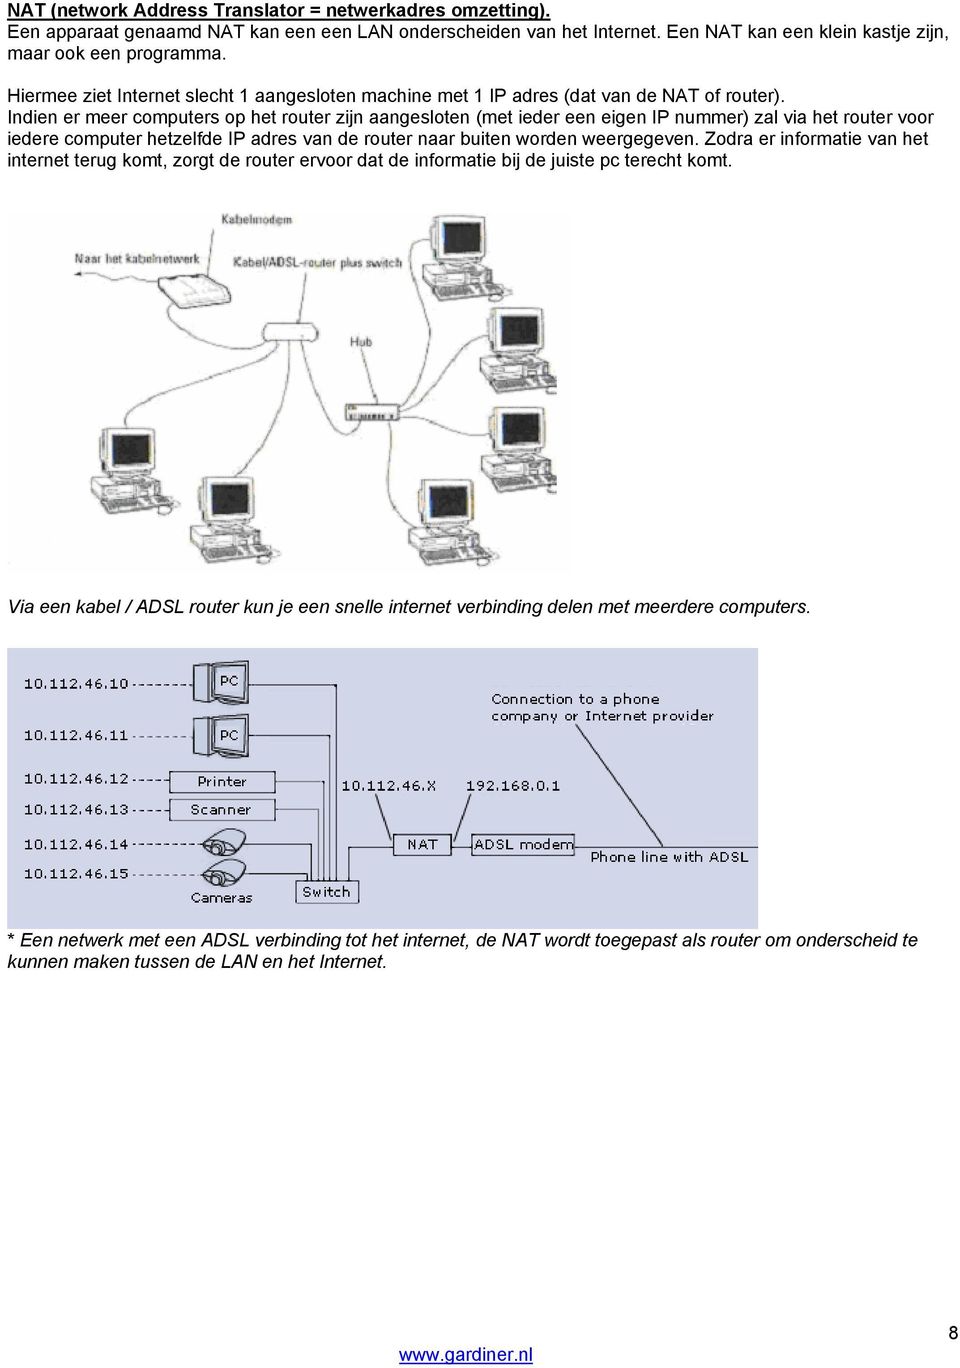 Indien er meer computers op het router zijn aangesloten (met ieder een eigen IP nummer) zal via het router voor iedere computer hetzelfde IP adres van de router naar buiten worden weergegeven.